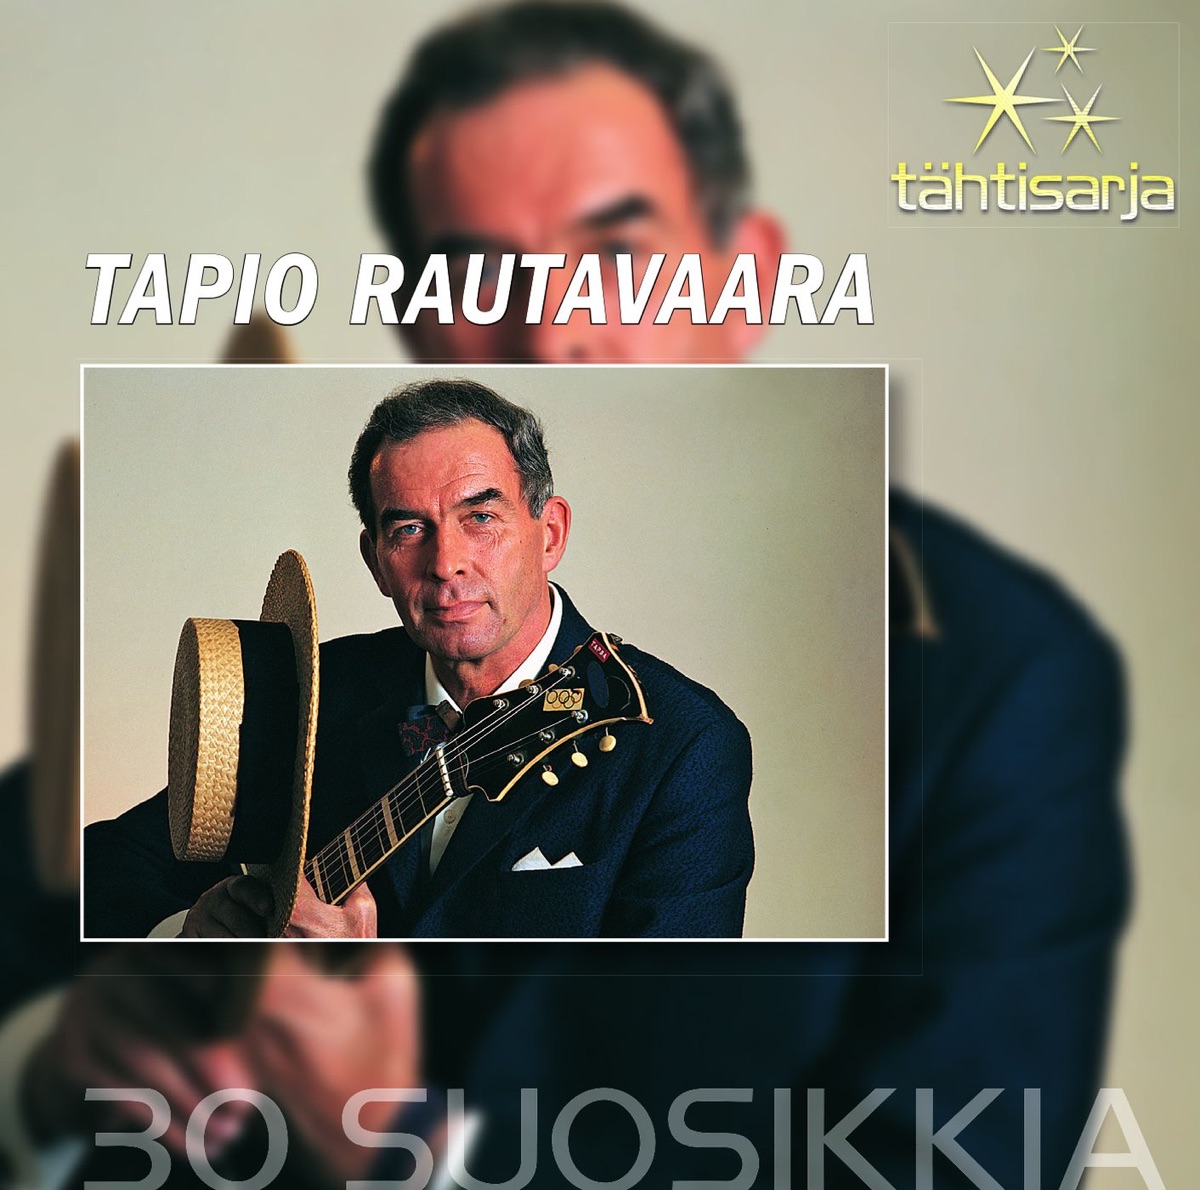 Kansanlauluja 1 by Tapio Rautavaara on Apple Music